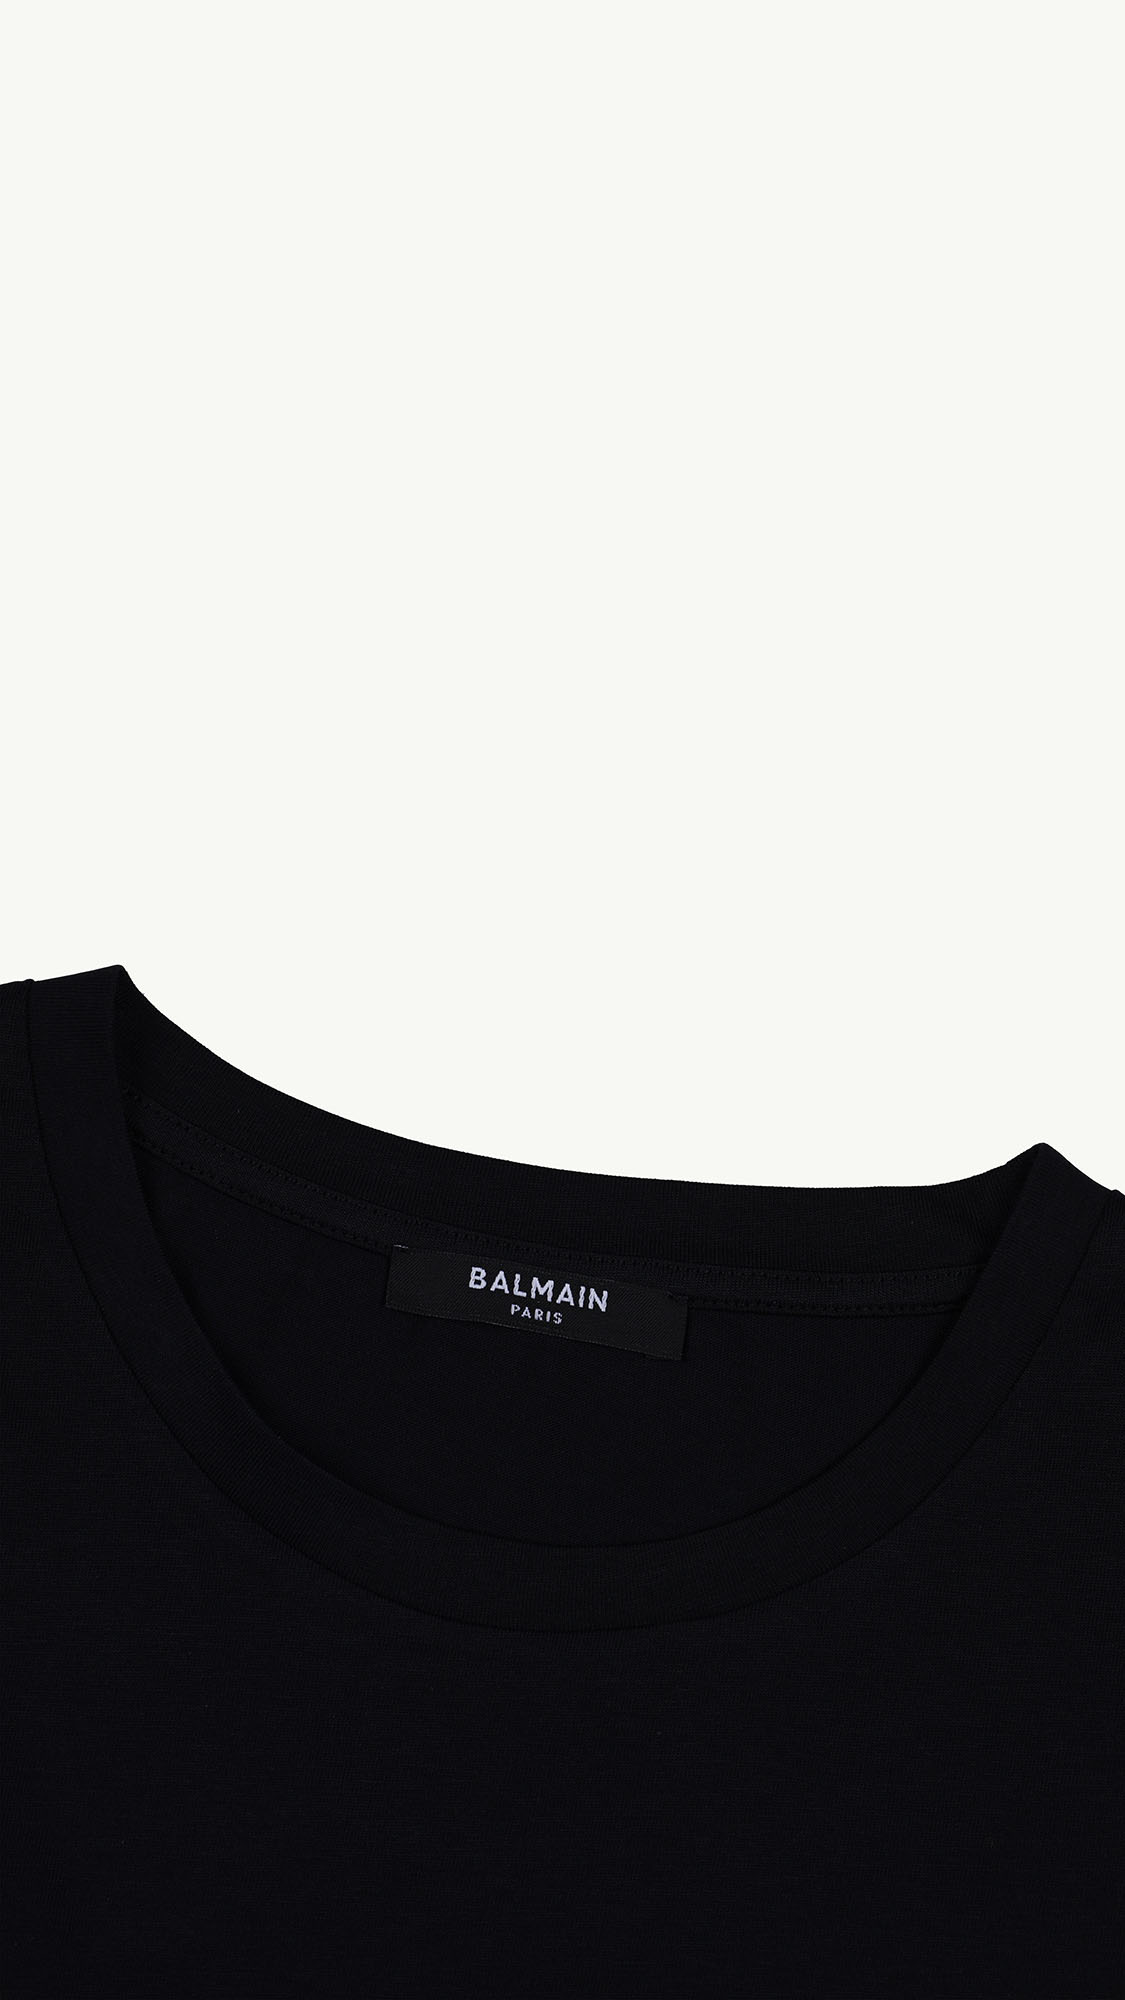 BALMAIN Women Balmain Paris Flocked Suede Logo T-Shirt in Black/White 3